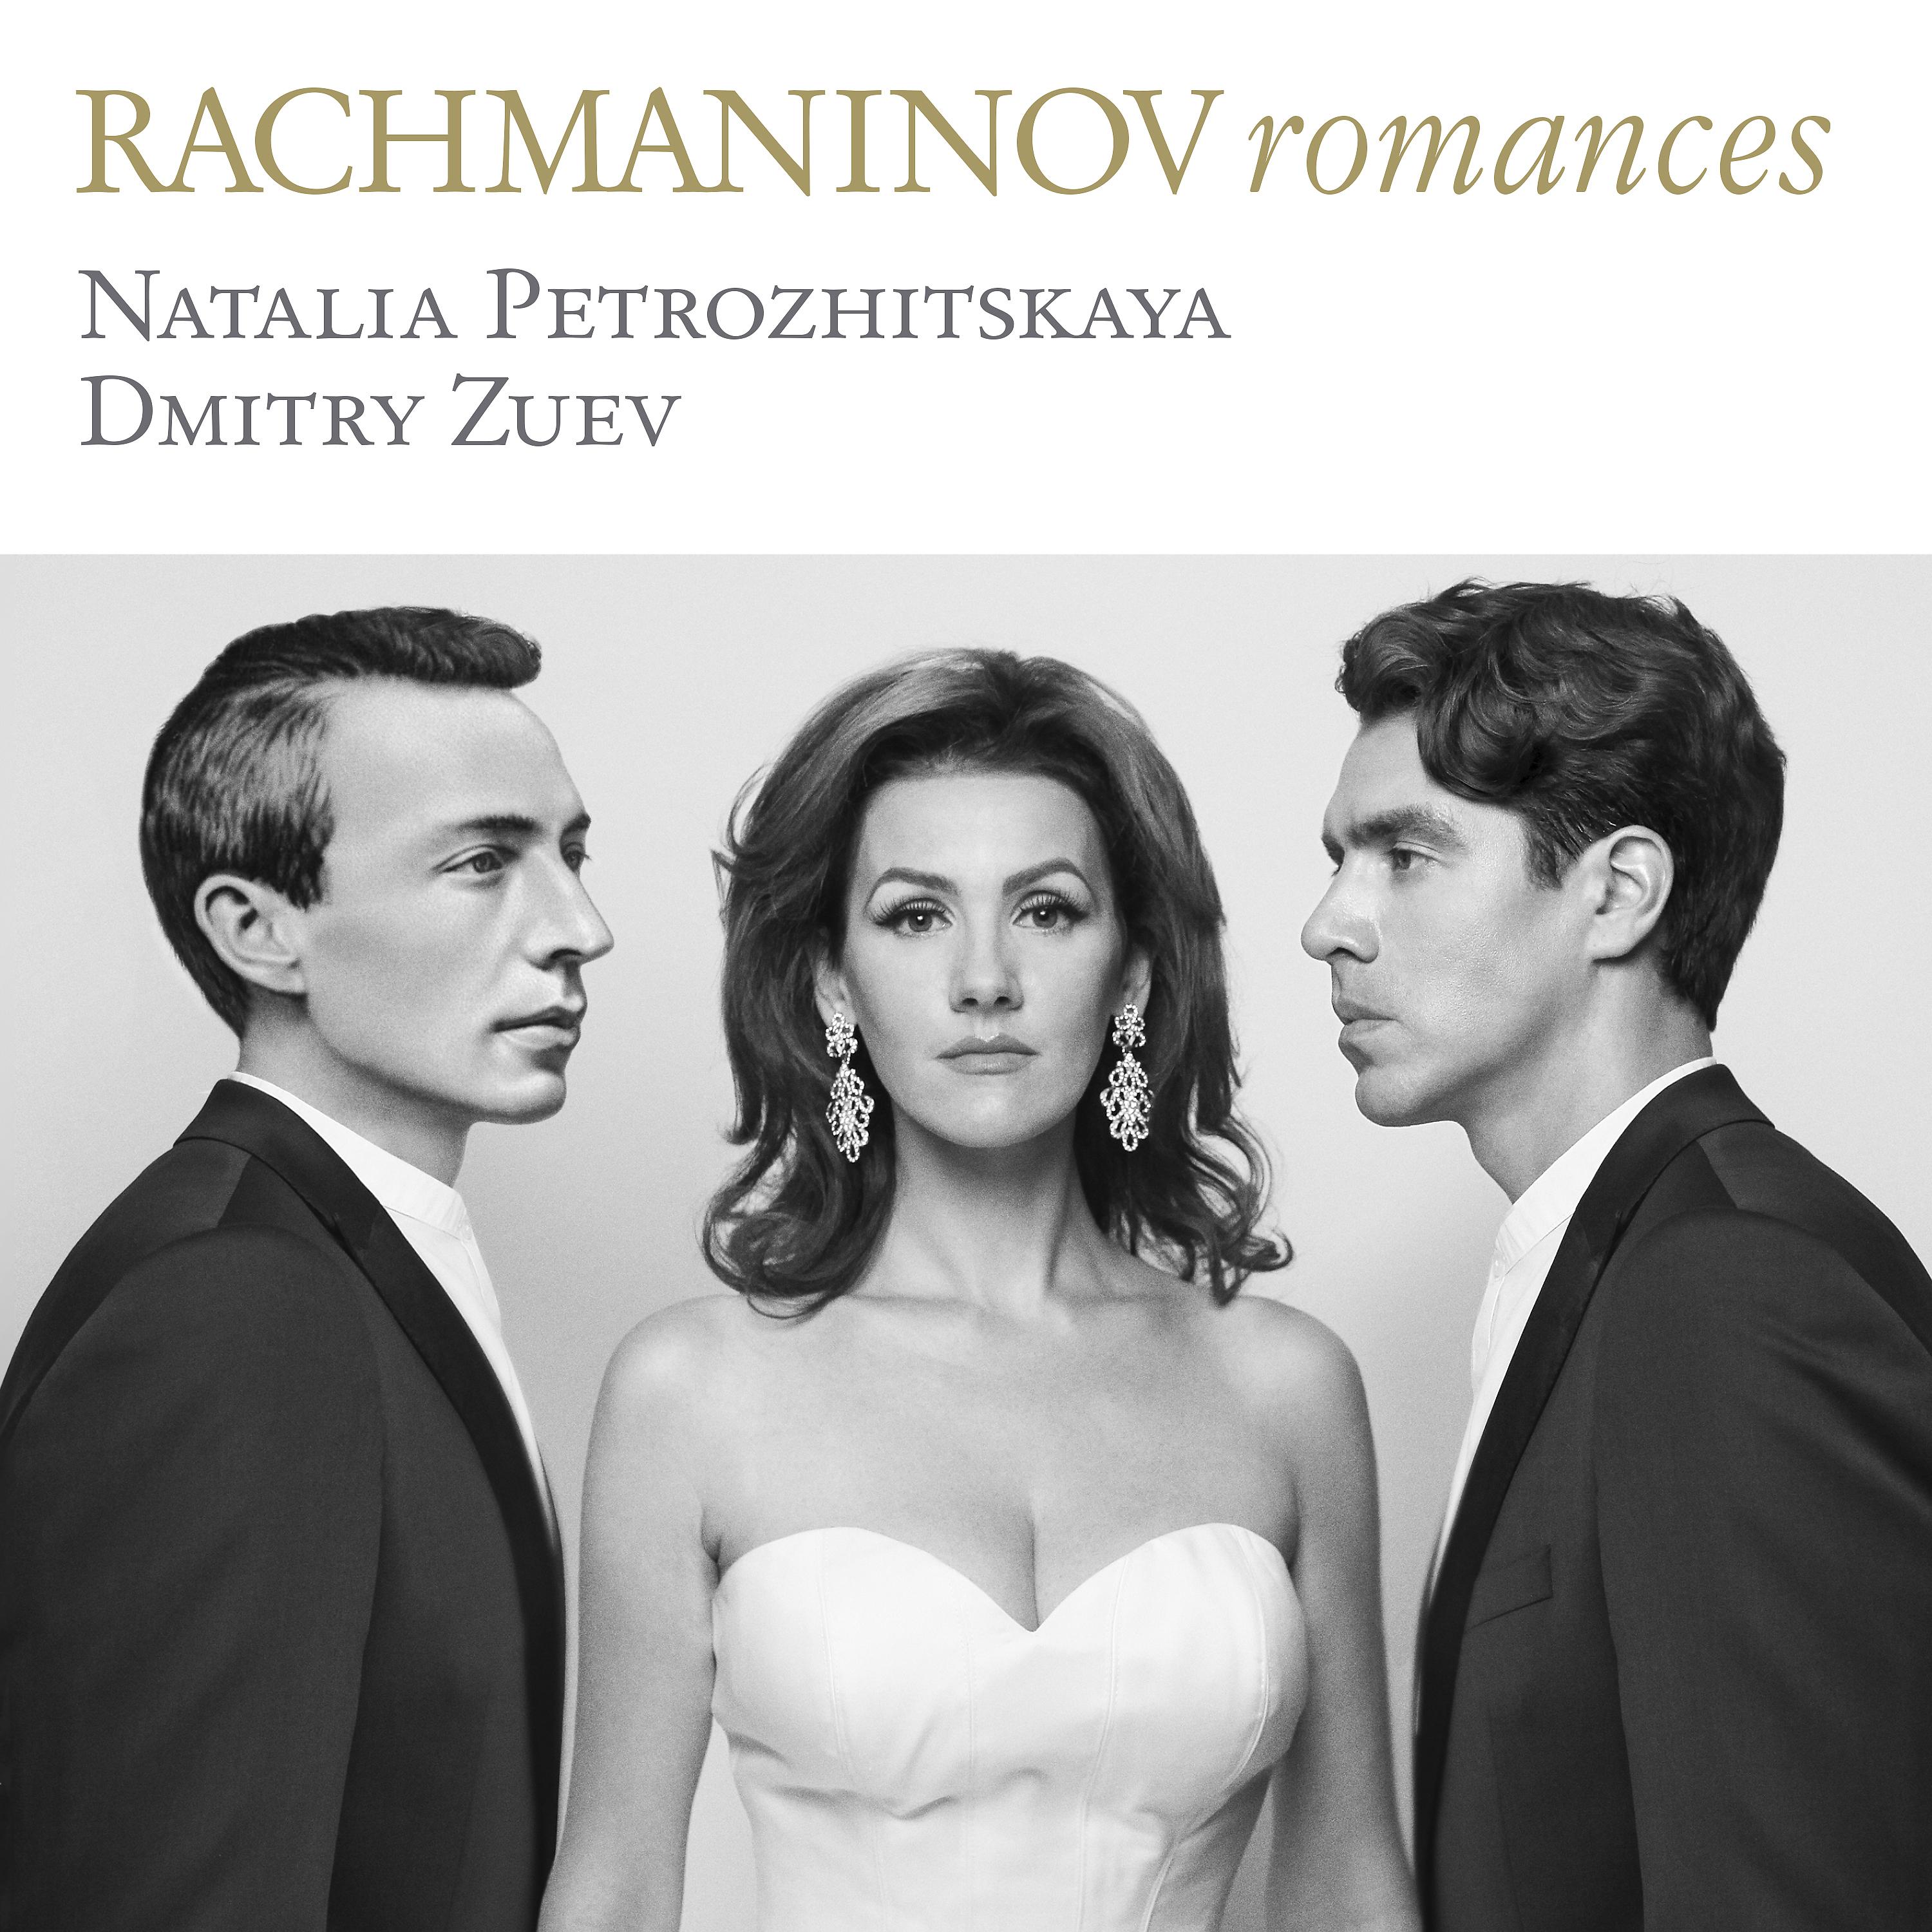 Romances 6. Рахманинов романсы.